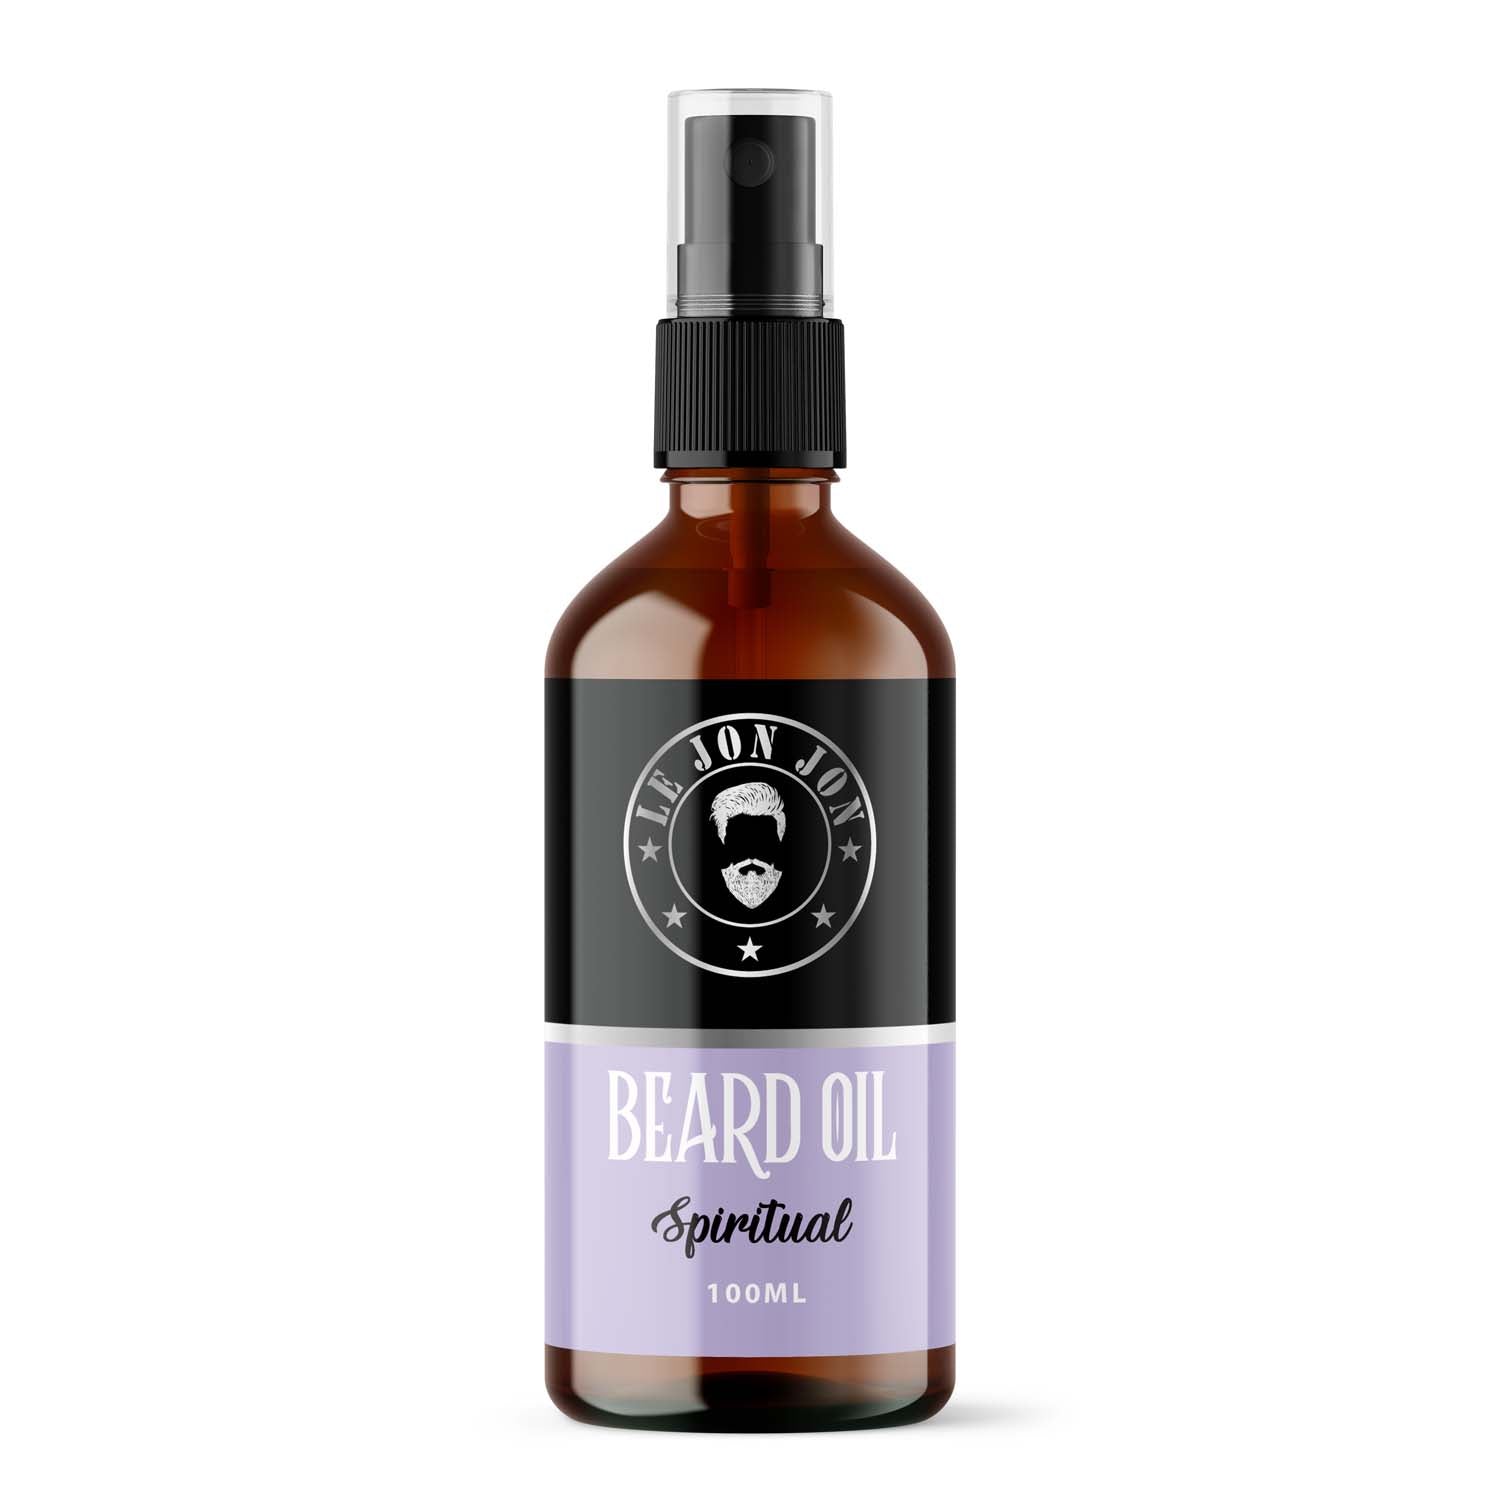 Spiritual 100ml bottle of beard oil